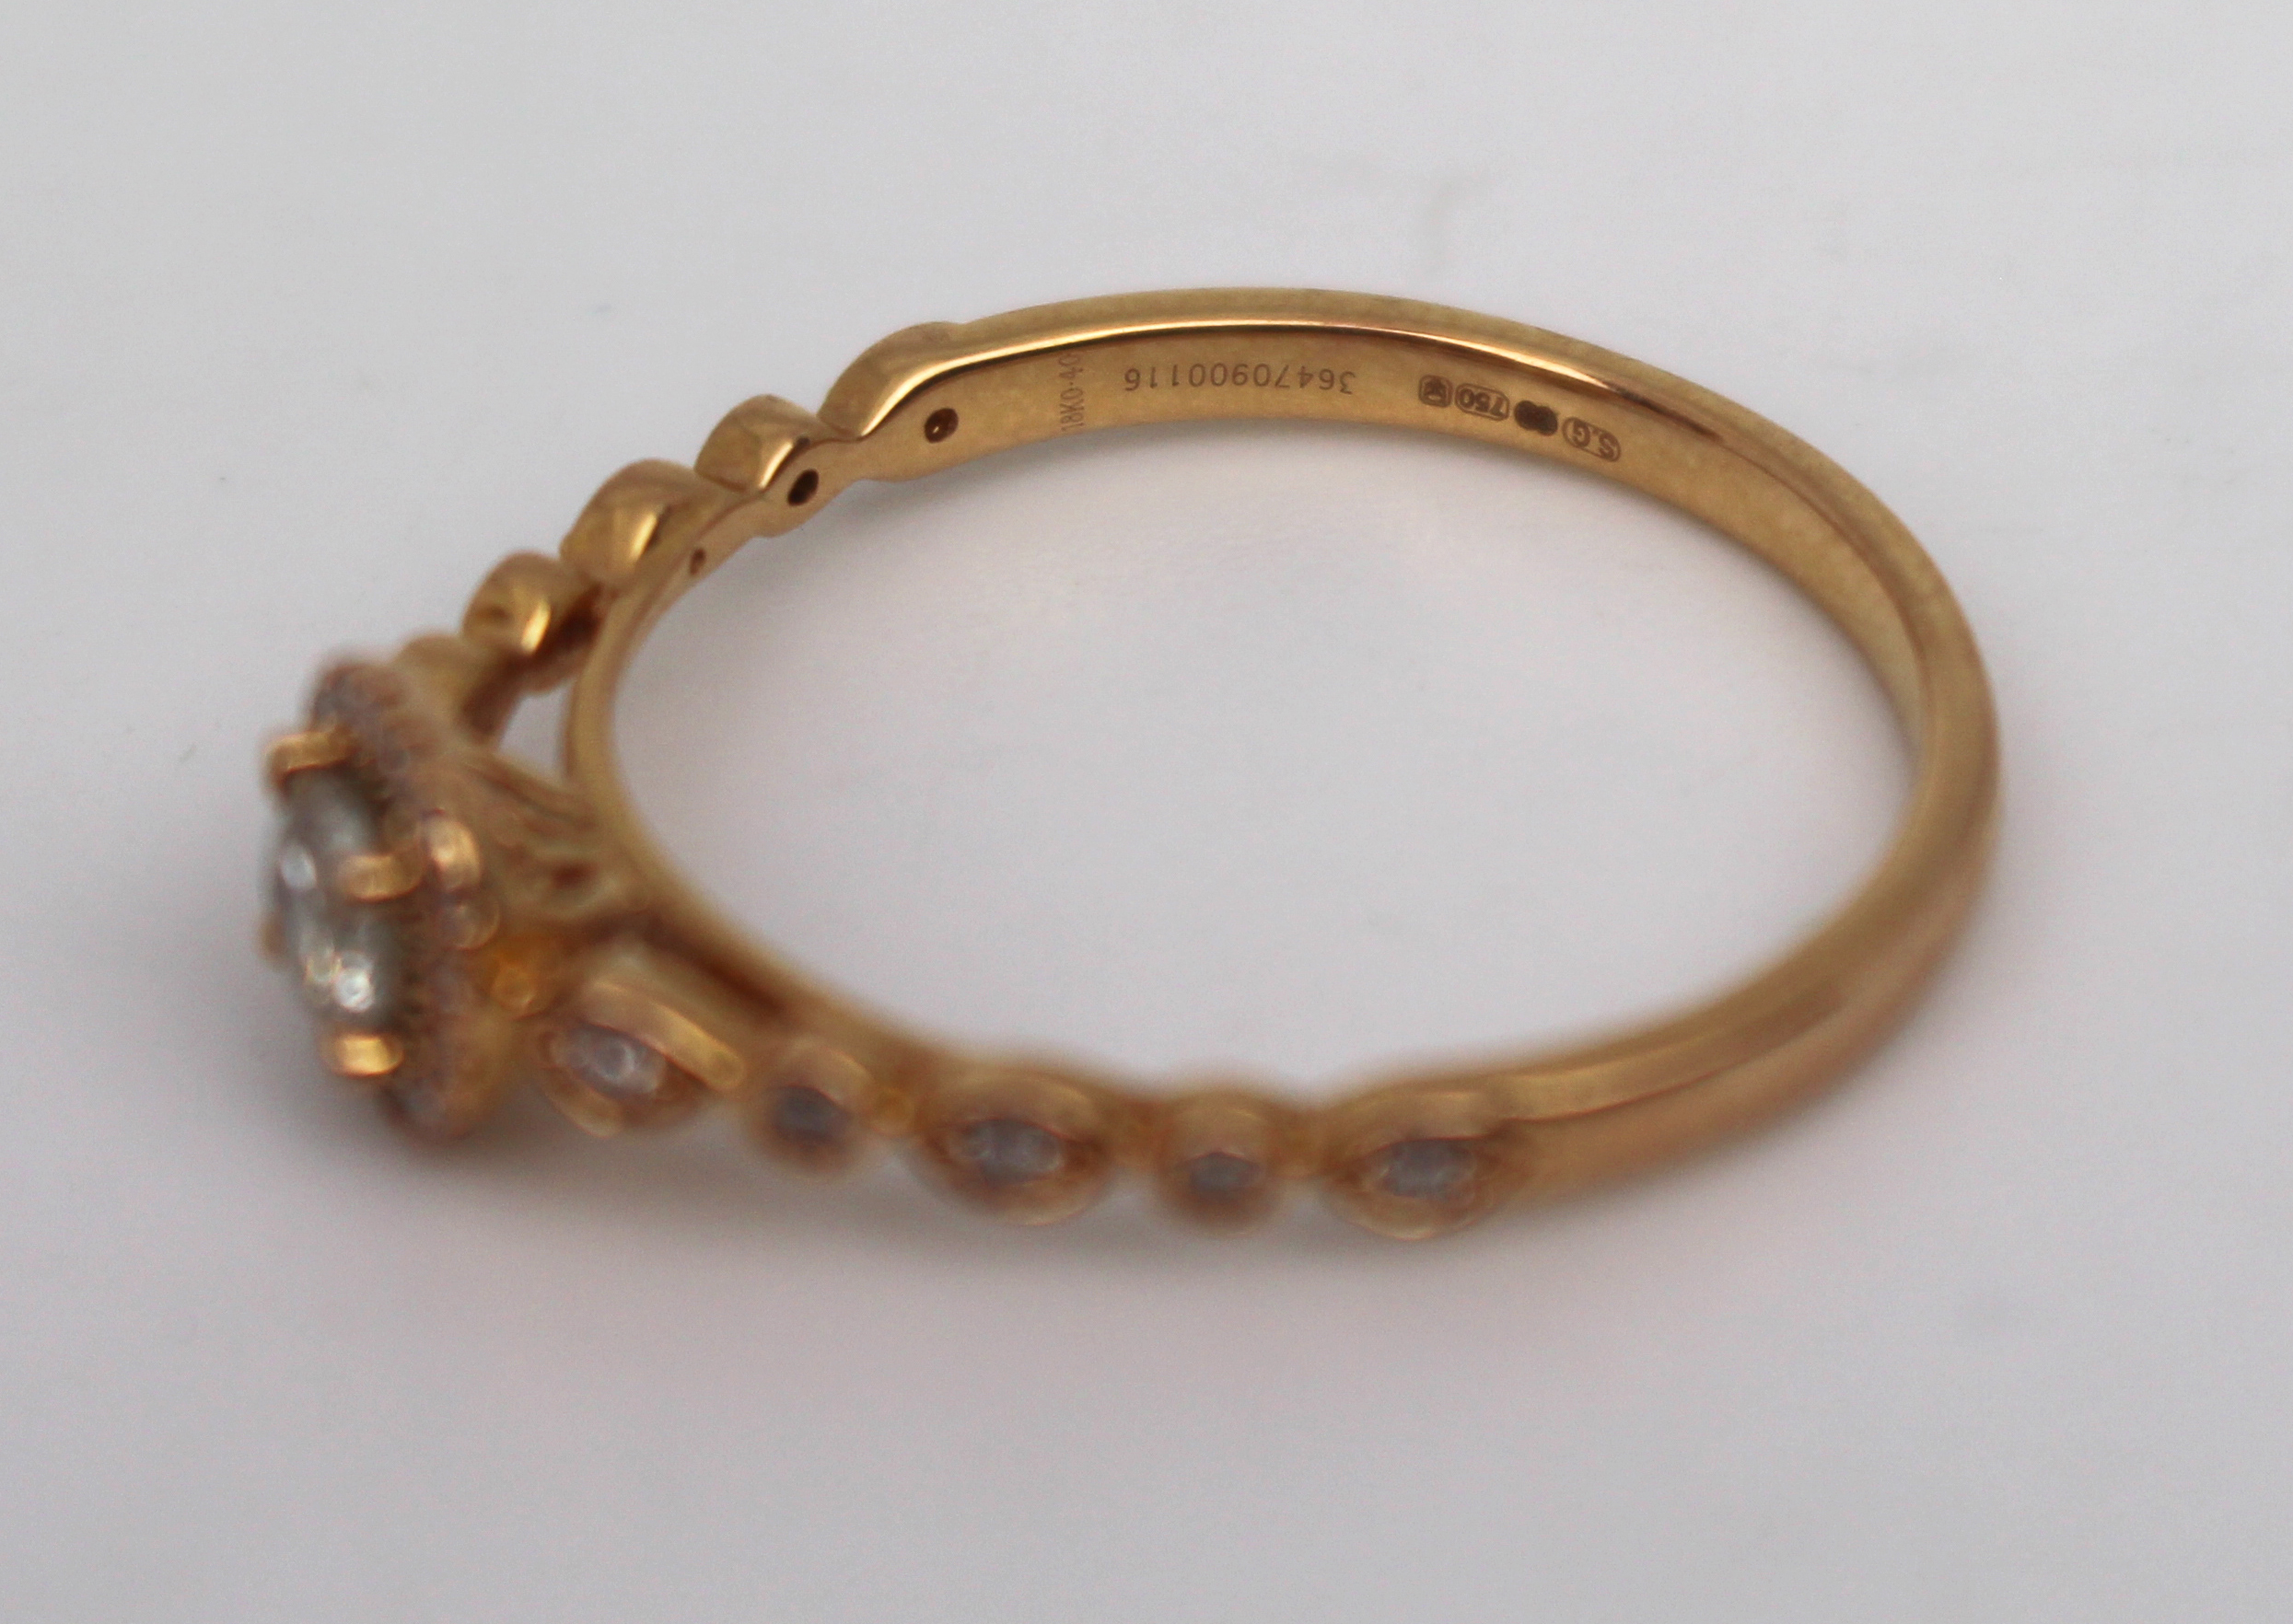 Diamond 18ct Rose Gold Ring - Image 2 of 4